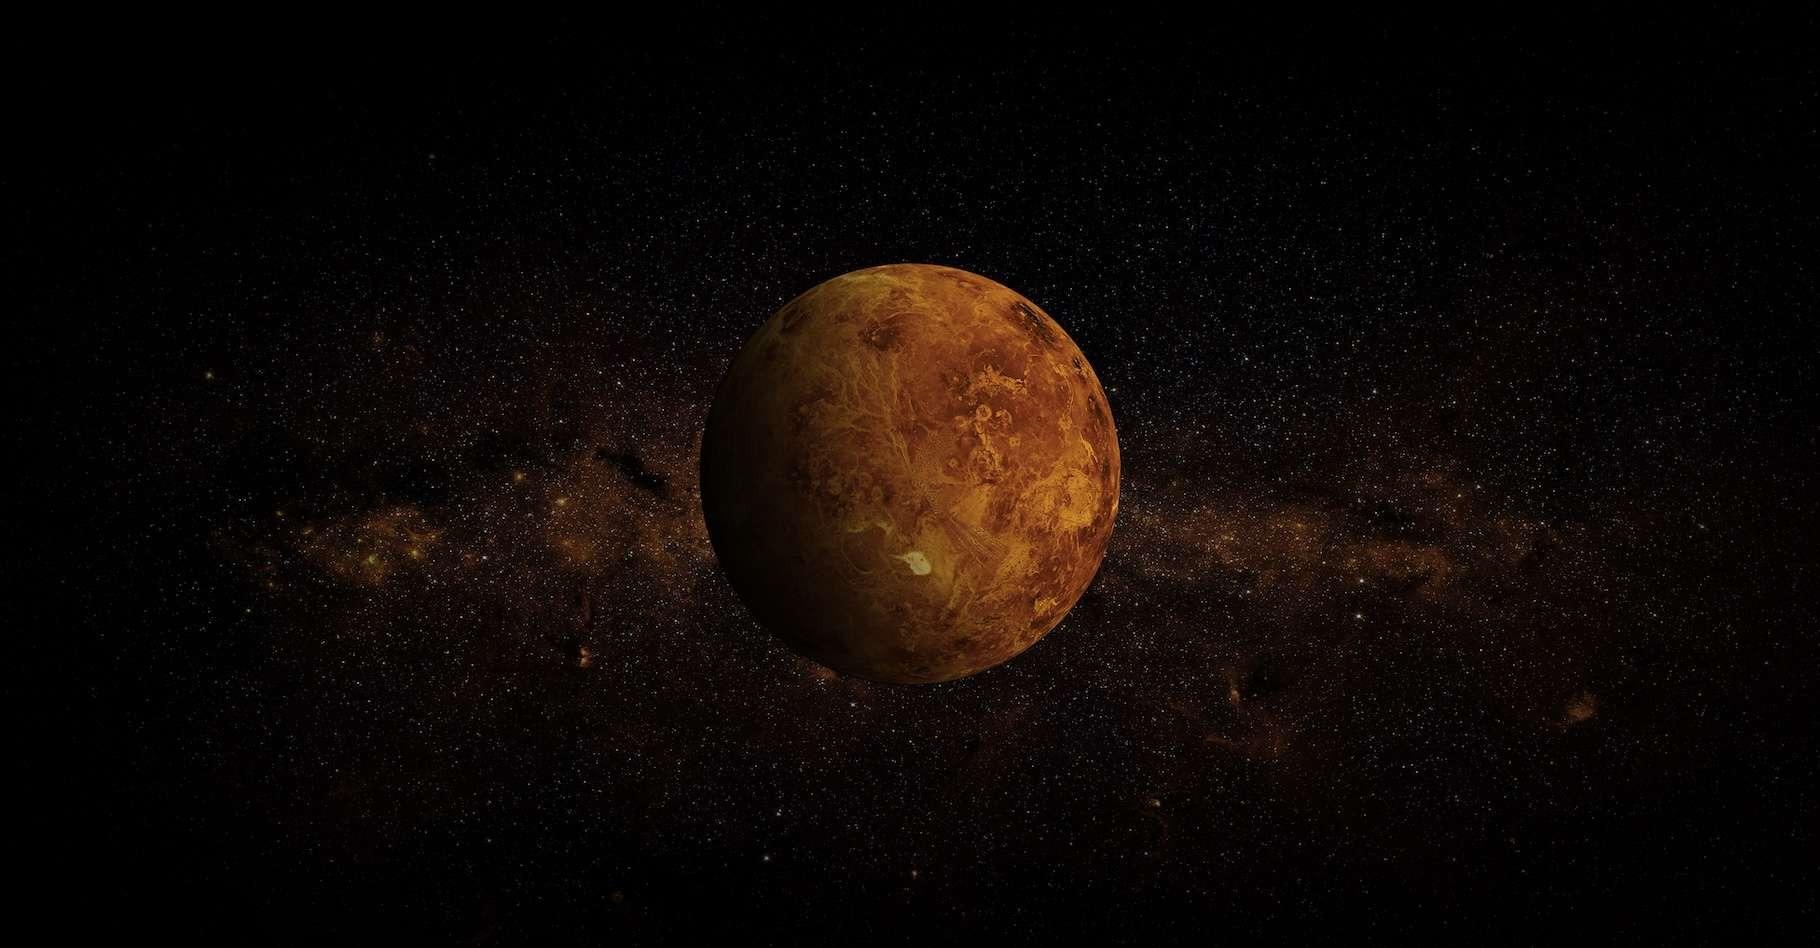 venus rotation retrograde - Die Venus dreht sich entgegengesetzt aller anderen Planeten!